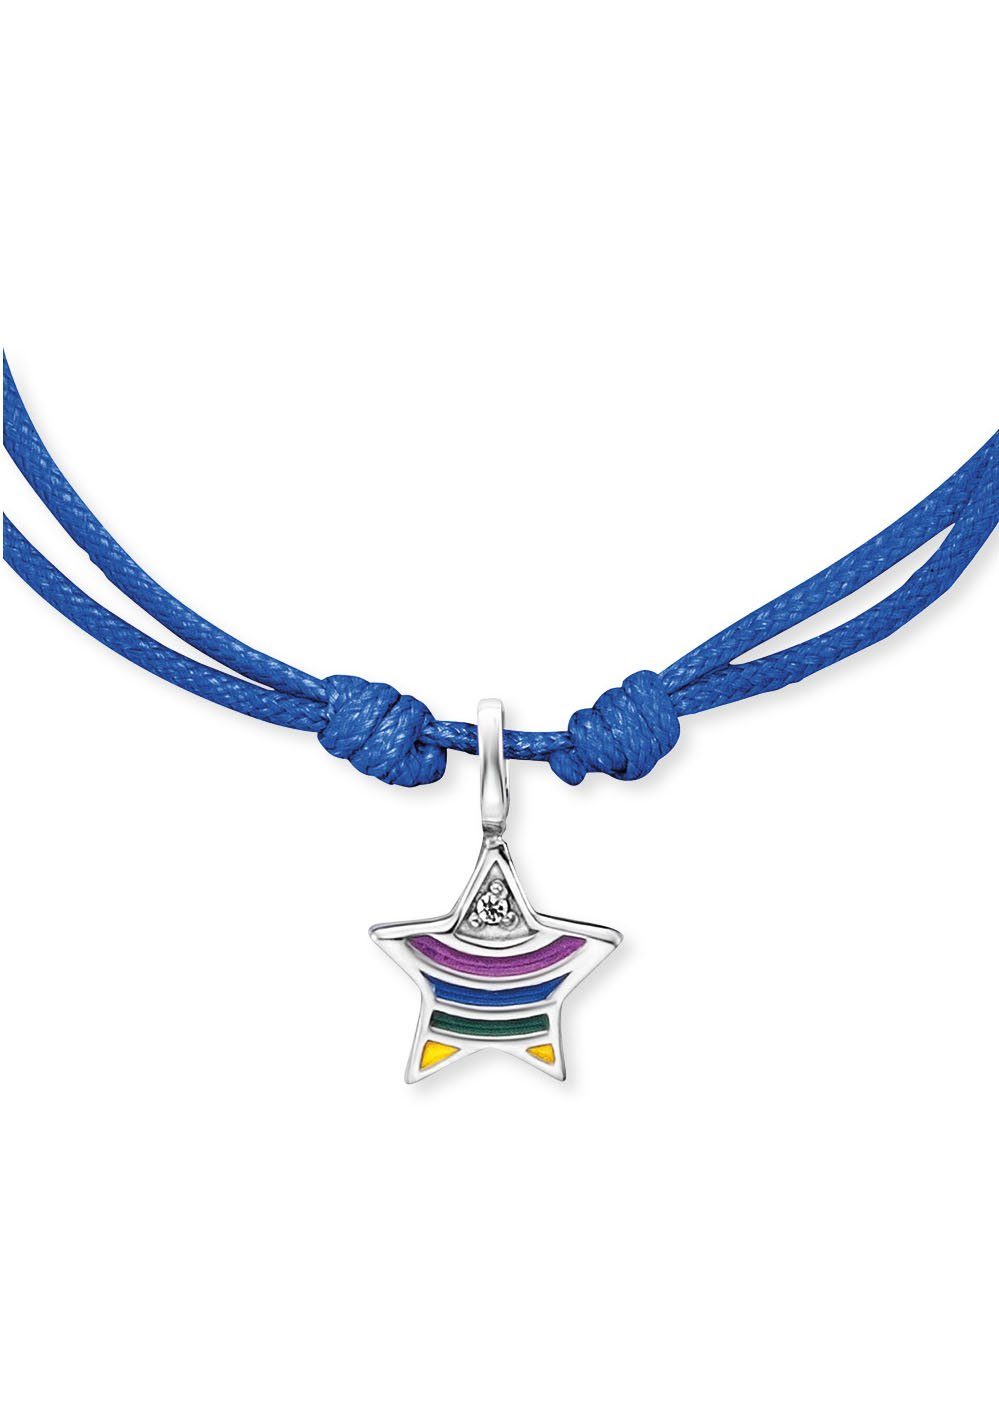 Herzengel Armband Stern rainbow, HEB-STAR-RAINBOW, Emaille mit